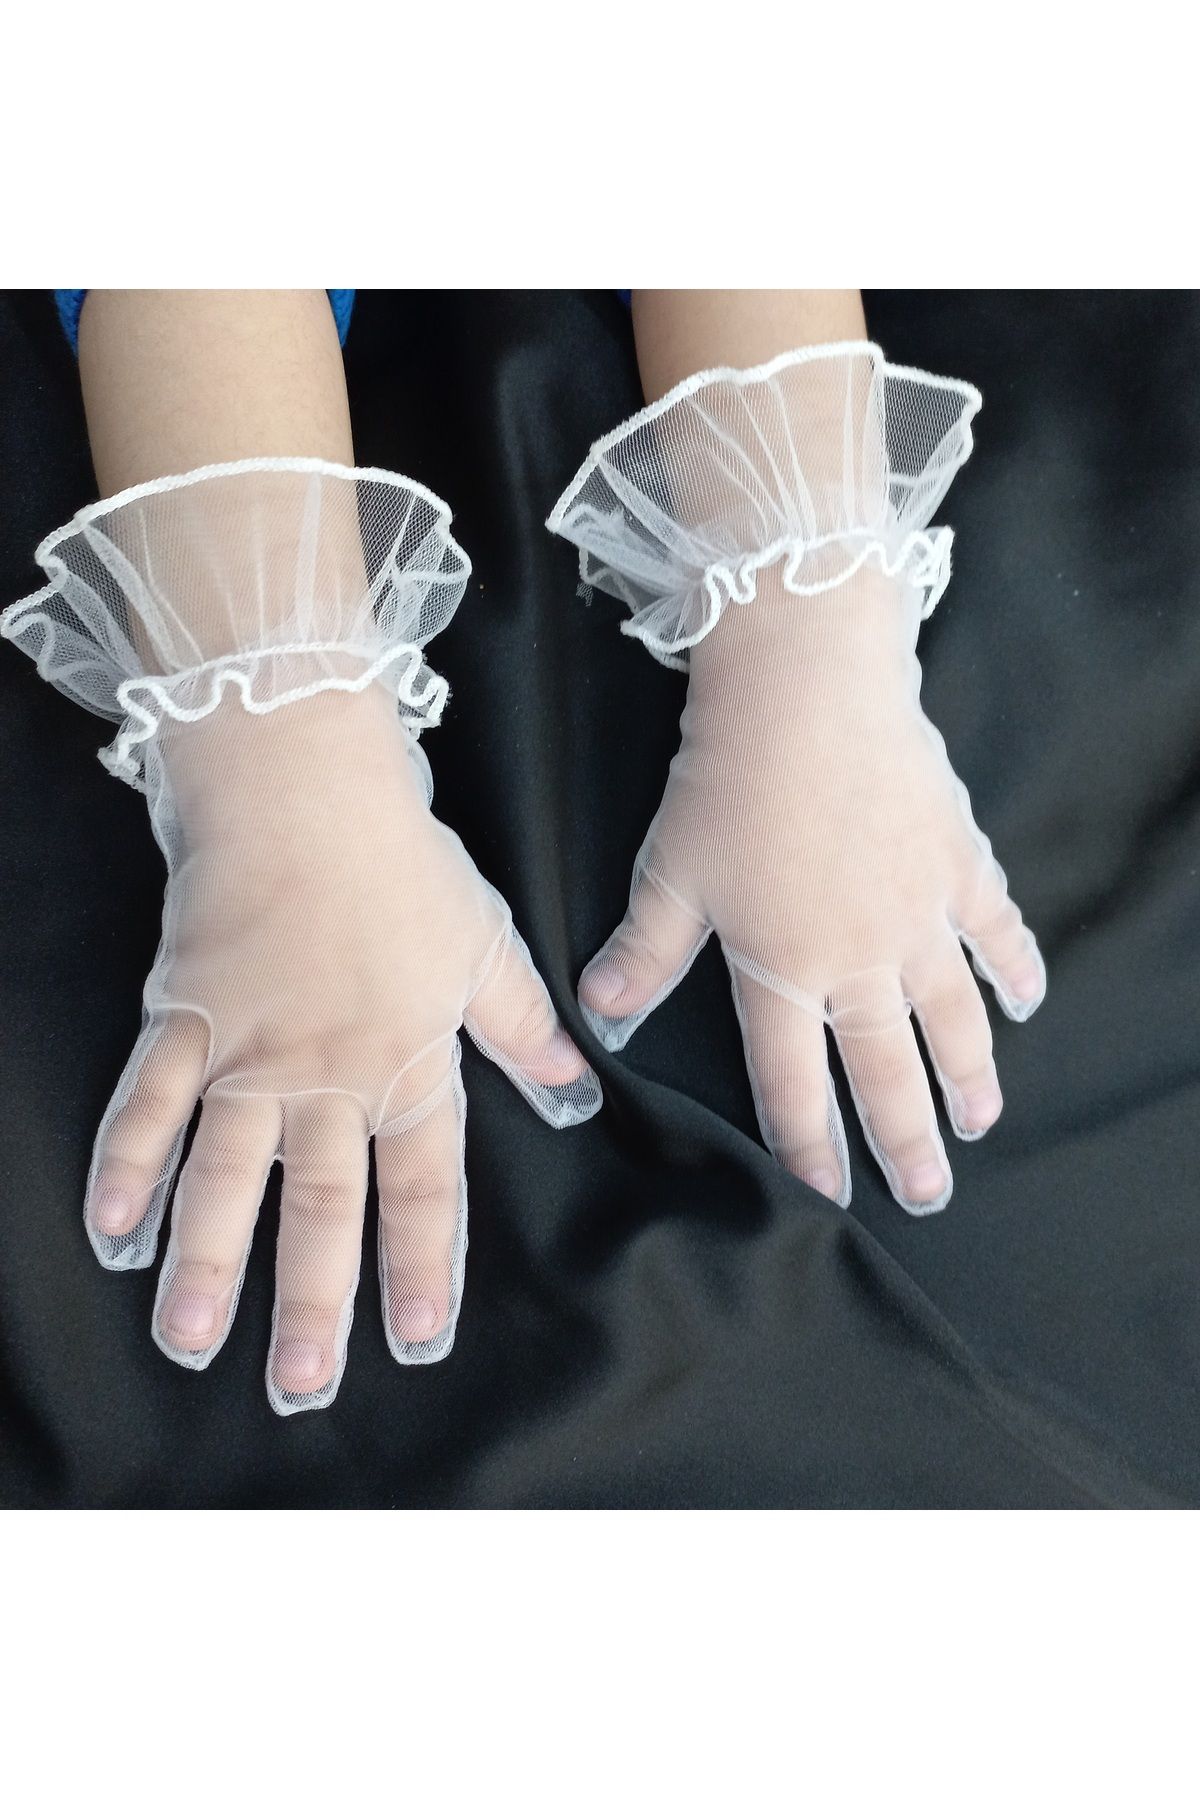 es moda shop Baby bella kız çocuk eldiven beyaz